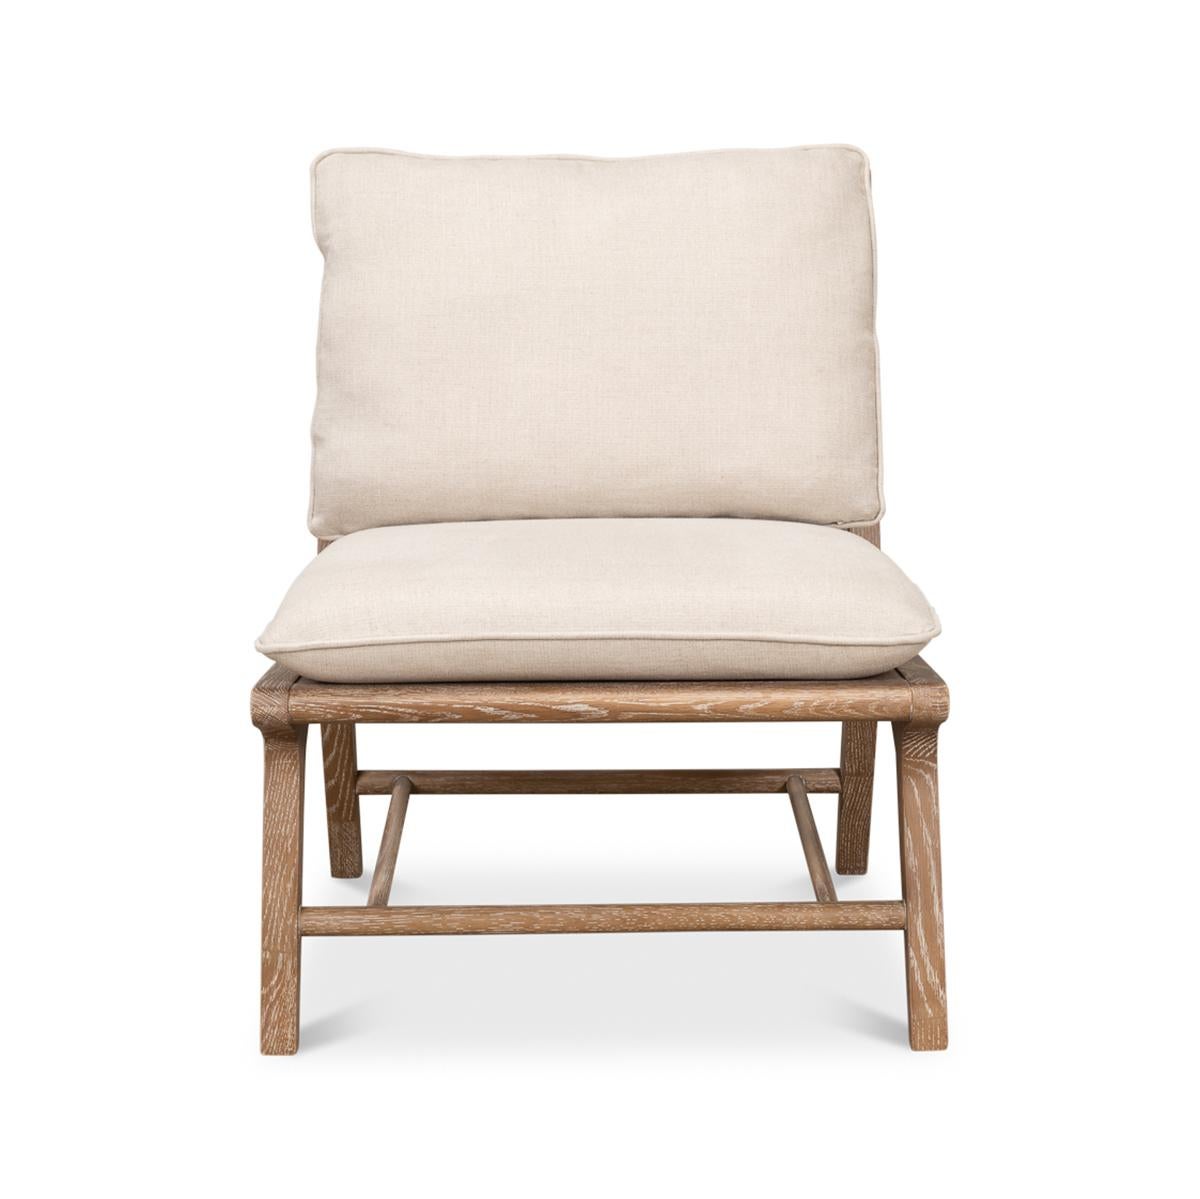 Ein Lattenstuhl im Mid-Century-Stil mit weiß getünchter Rückenlehne und gepolstertem Sitz aus Leinen. Es enthält ein loses Kissen für den Rücken. 

Abmessungen: 25